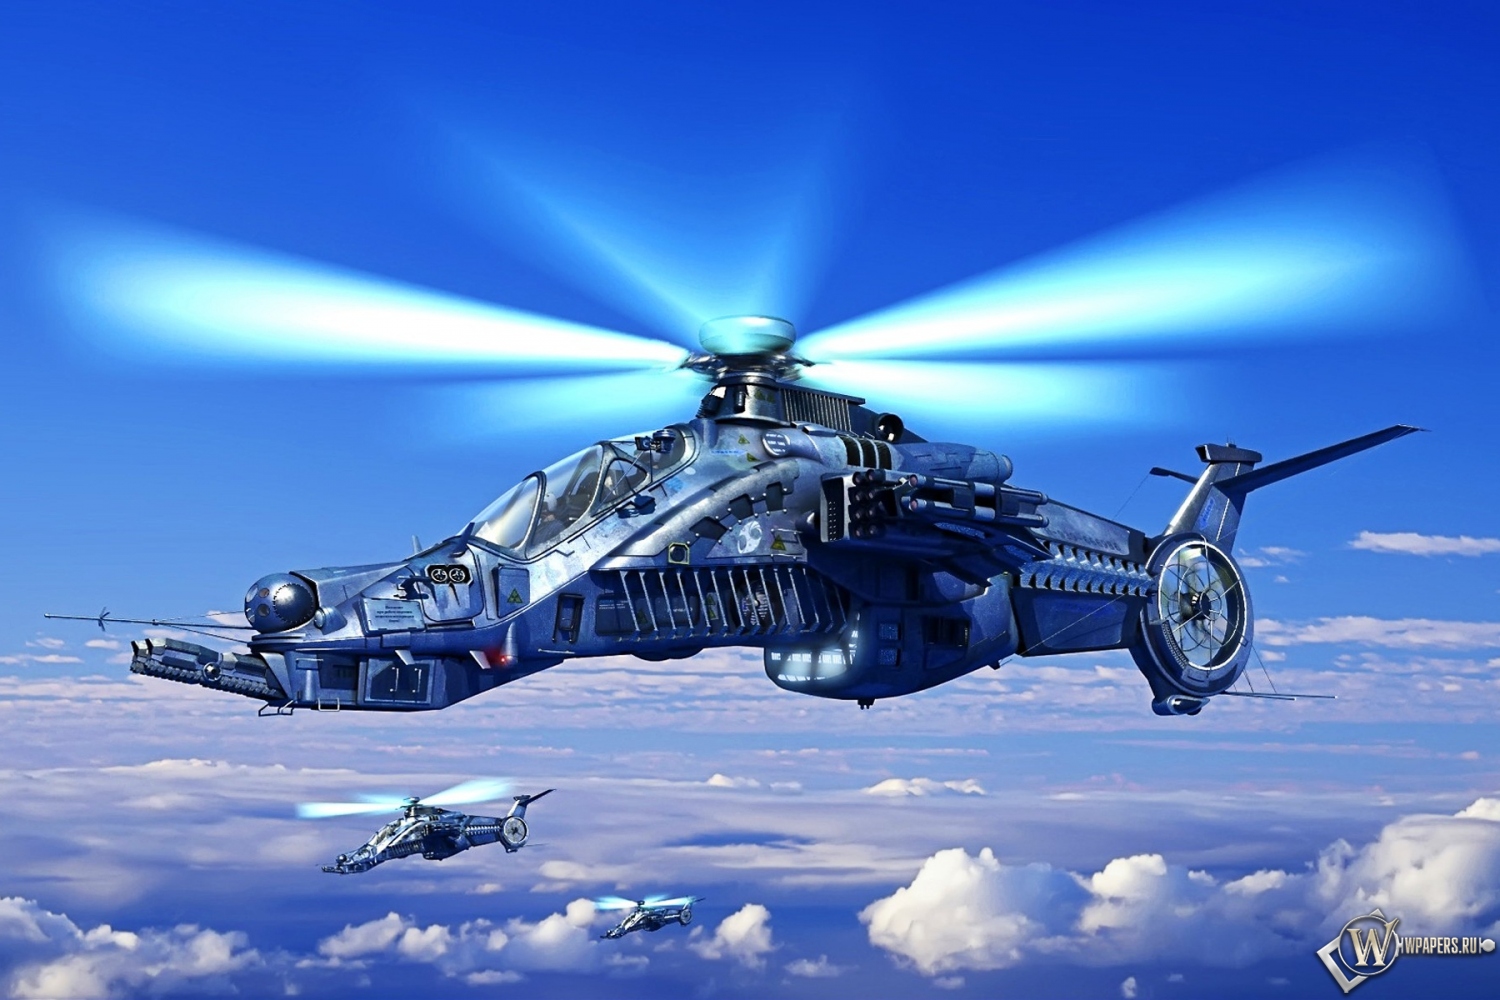 Вертолет будующего 1500x1000